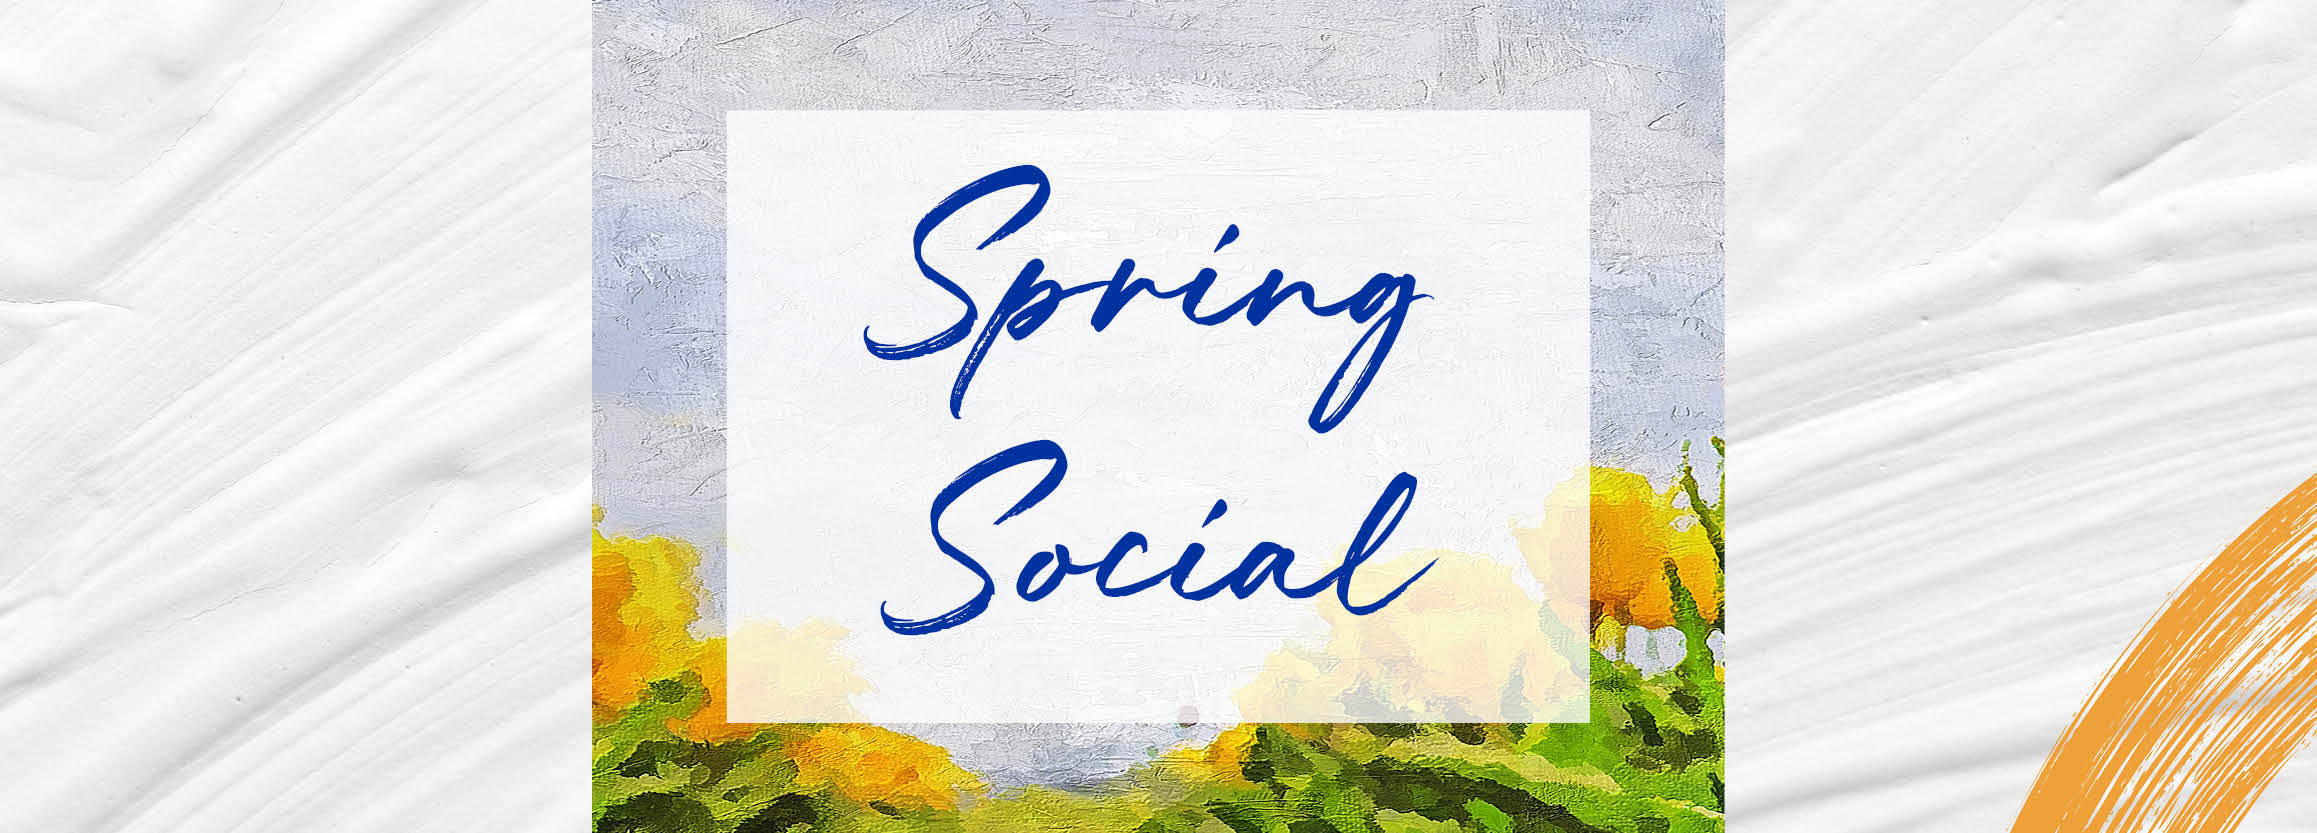 A Recap of our Spring Social Event